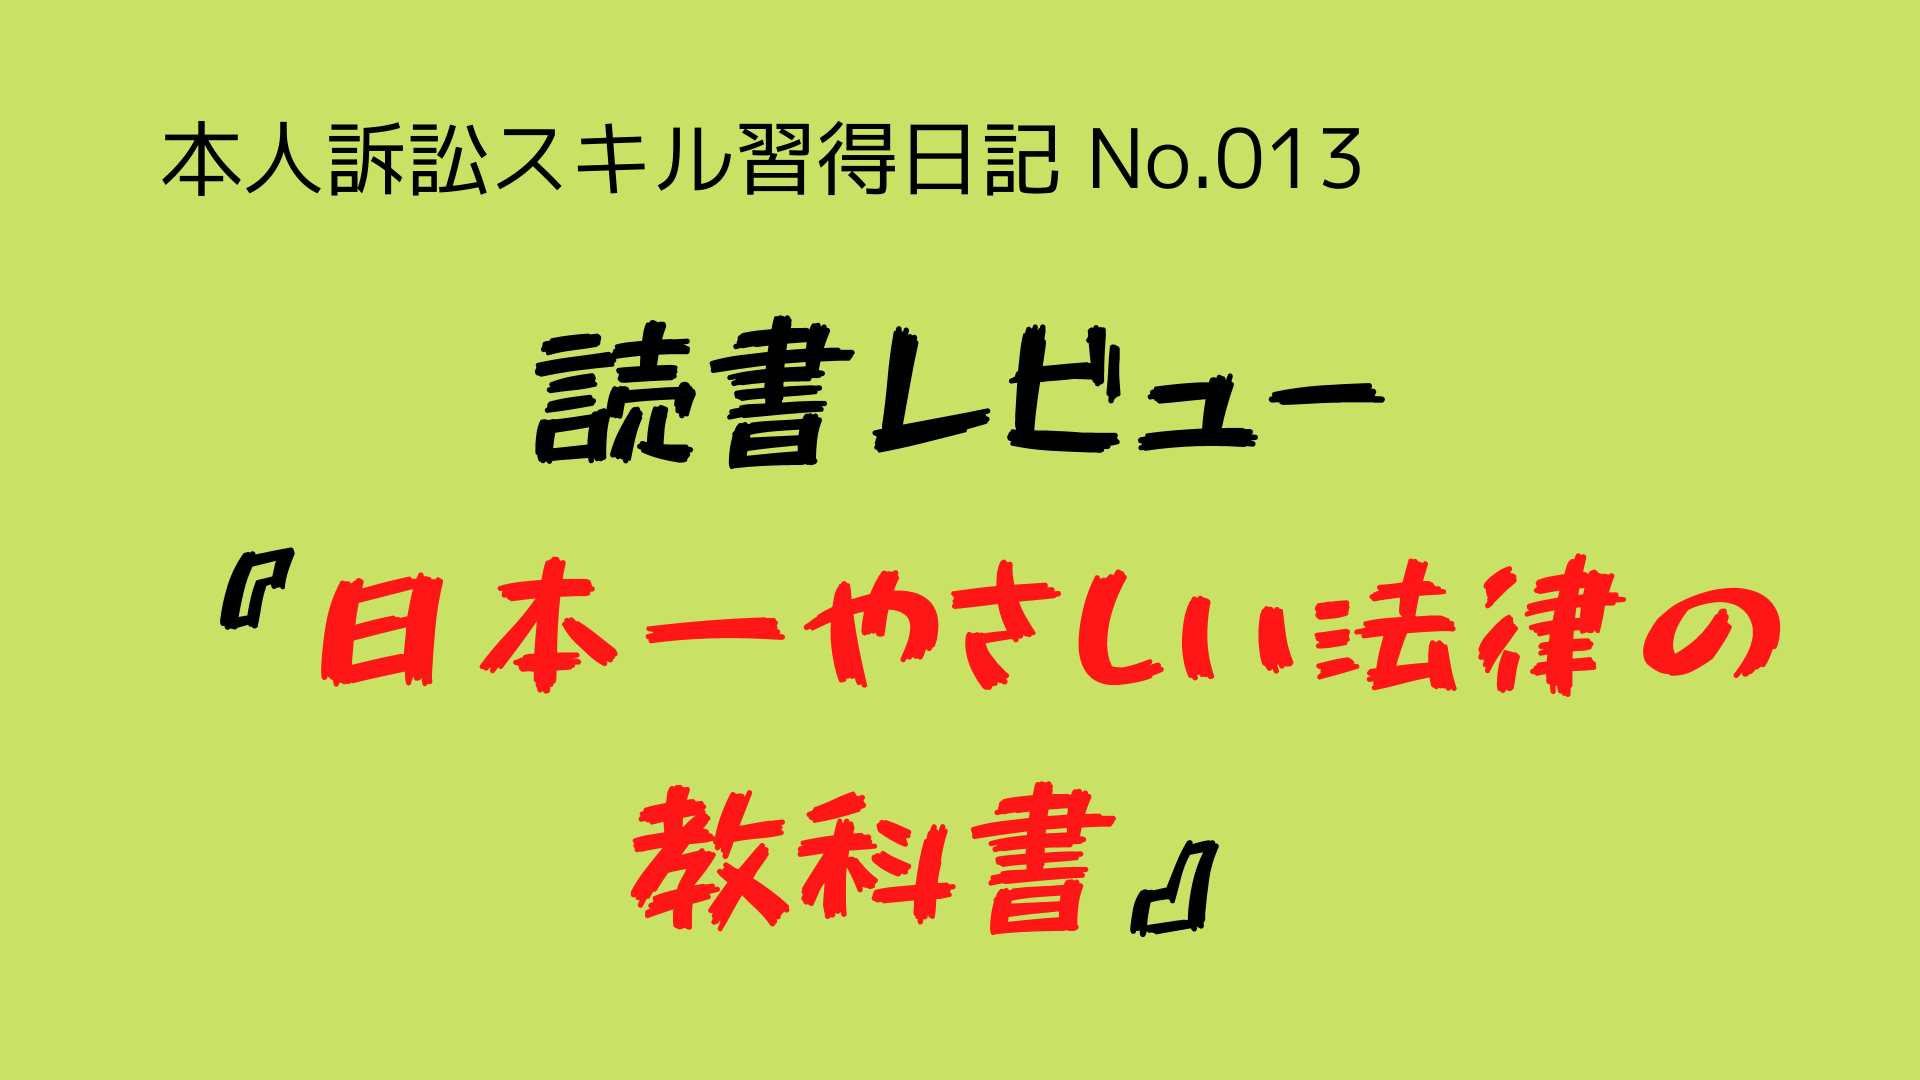 （本人訴訟スキル習得日記-No.013）法律の基礎を学ぶため、『日本一やさしい法律の教科書』という本を読んだ